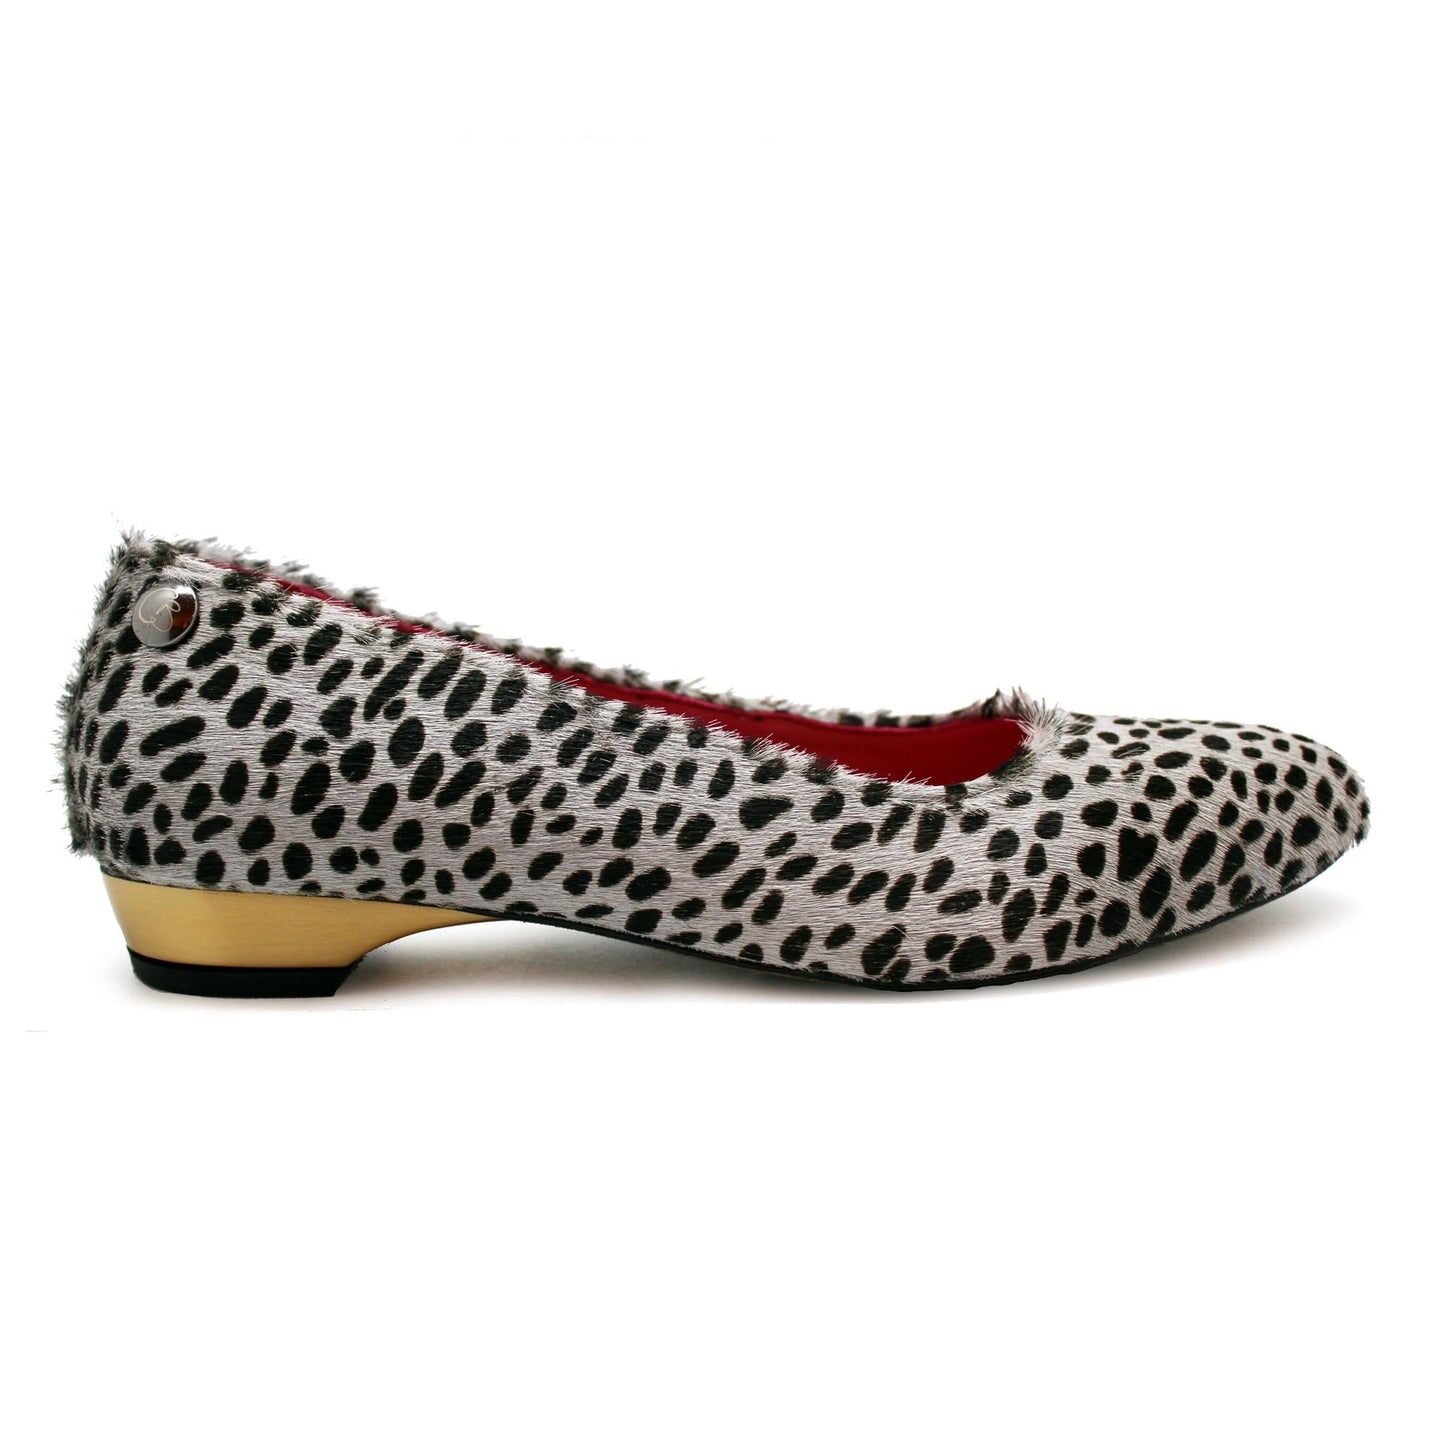 Pirouette- grey cheetah- last pair 37!